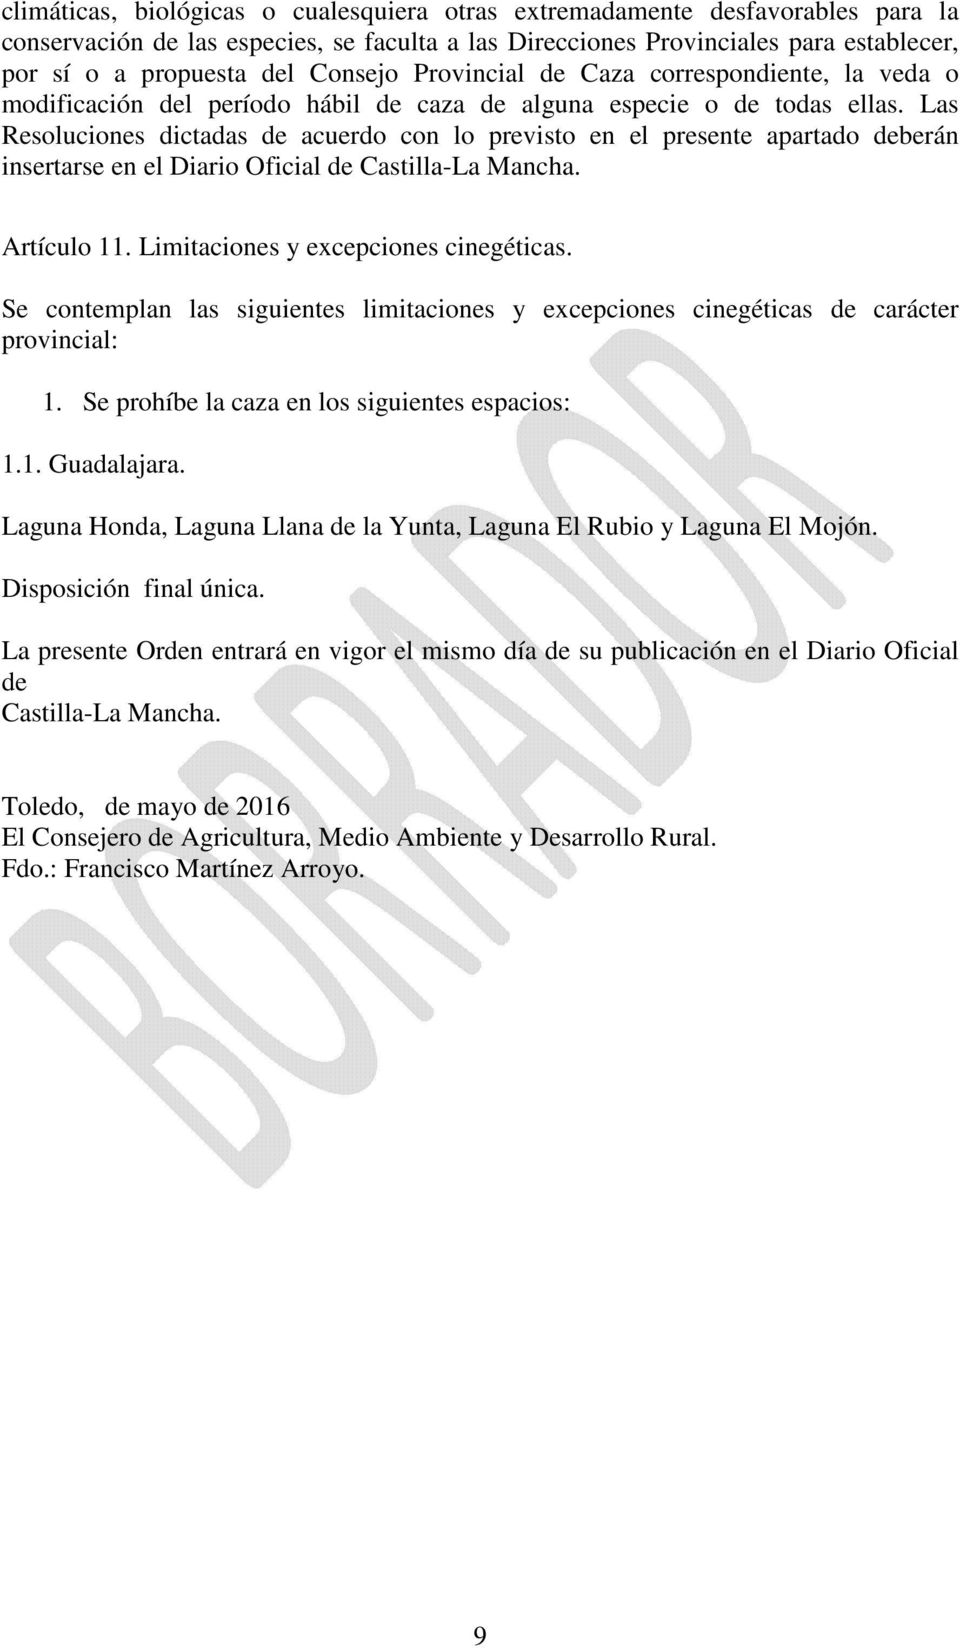 Las Resoluciones dictadas de acuerdo con lo previsto en el presente apartado deberán insertarse en el Diario Oficial de Castilla-La Mancha. Artículo 11. Limitaciones y excepciones cinegéticas.